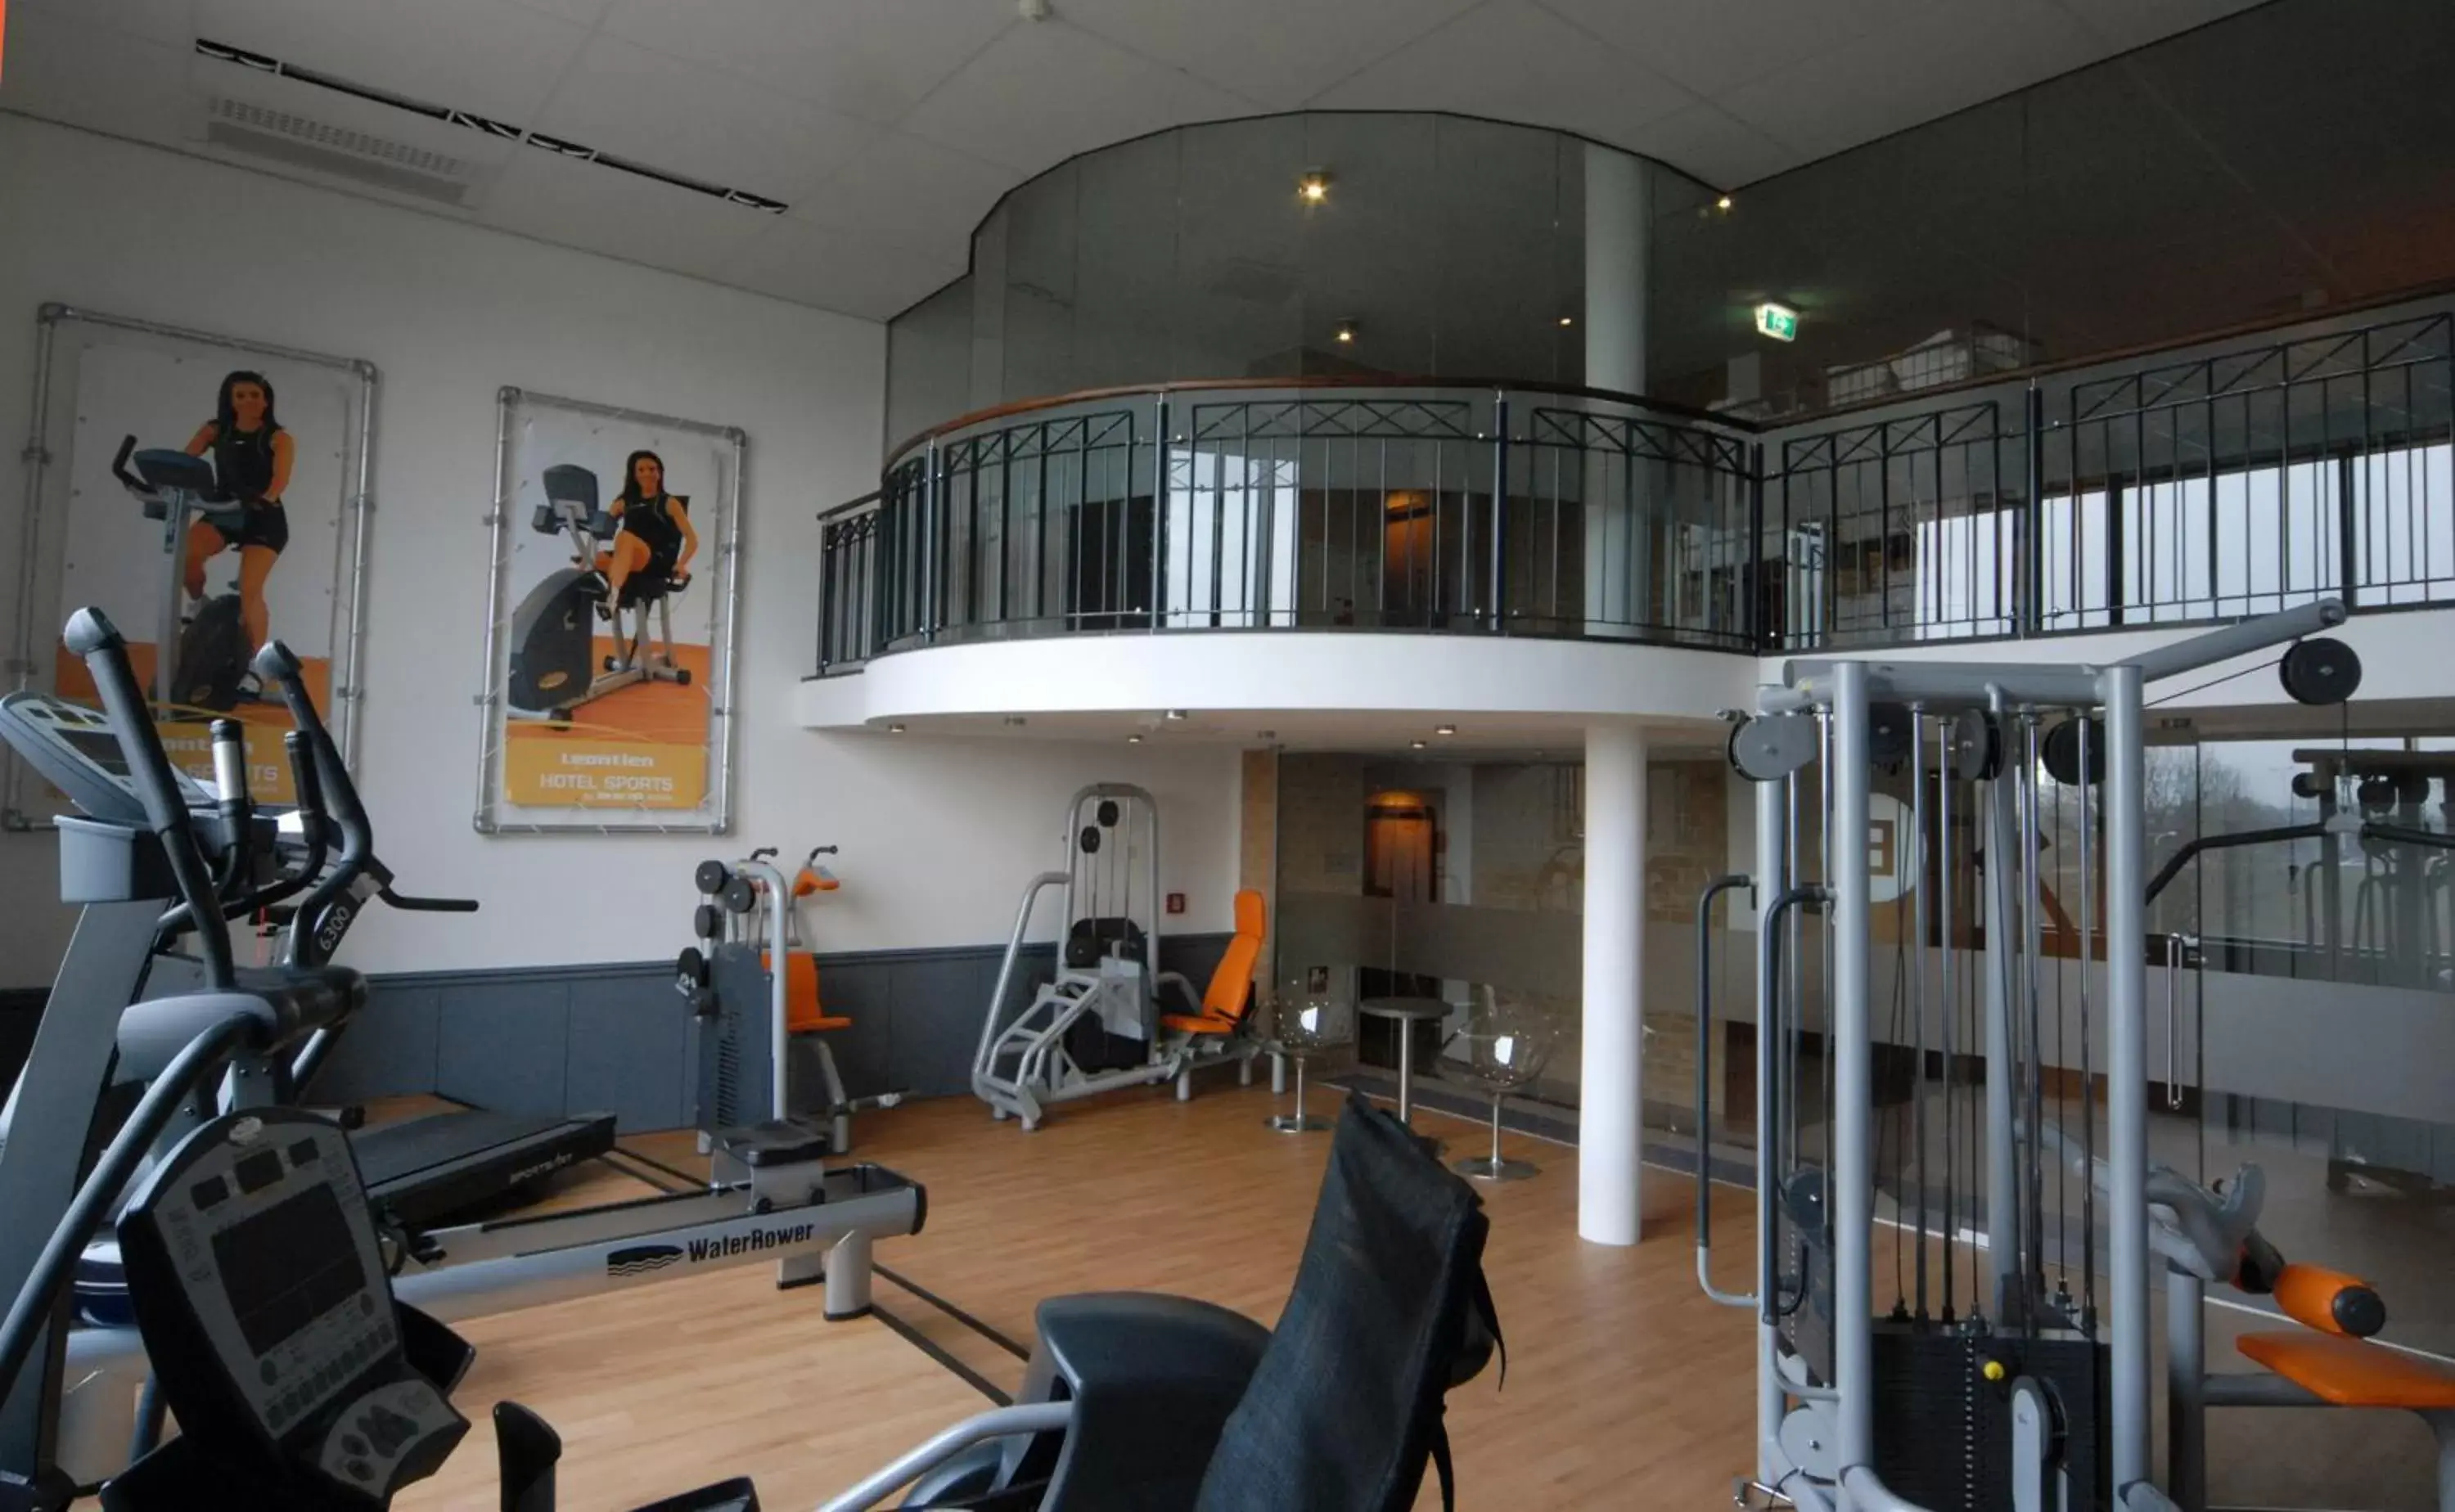 Fitness centre/facilities, Fitness Center/Facilities in Hotel Van der Valk Maastricht